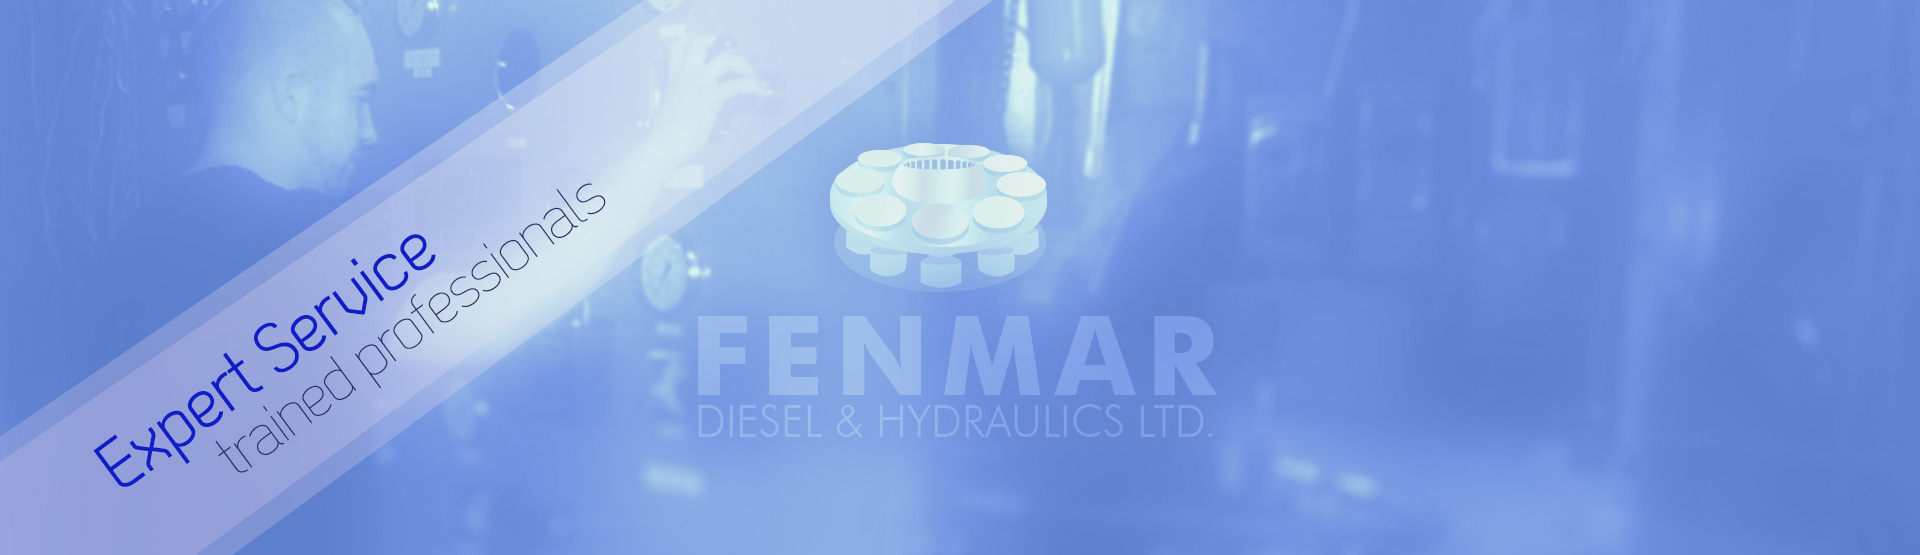 Fenmar Diesel & Hydraulics